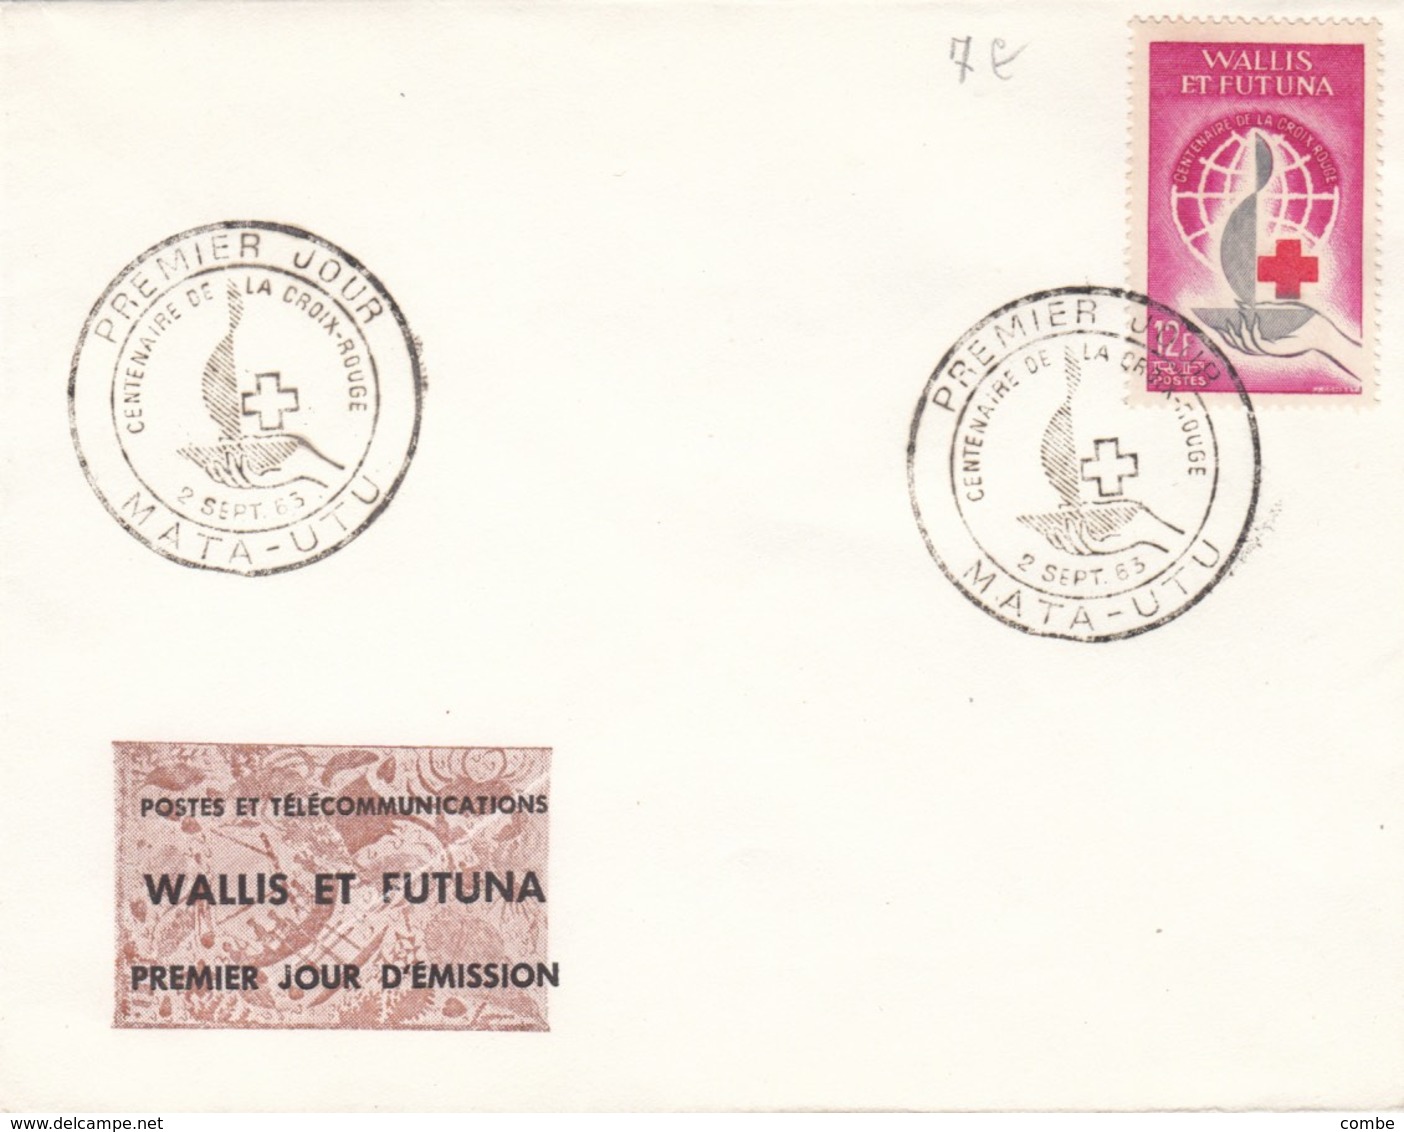 WALLIS ET FUTUNA PREMIER JOUR CROIX-ROUGE 1963 MATA-UTU - Covers & Documents